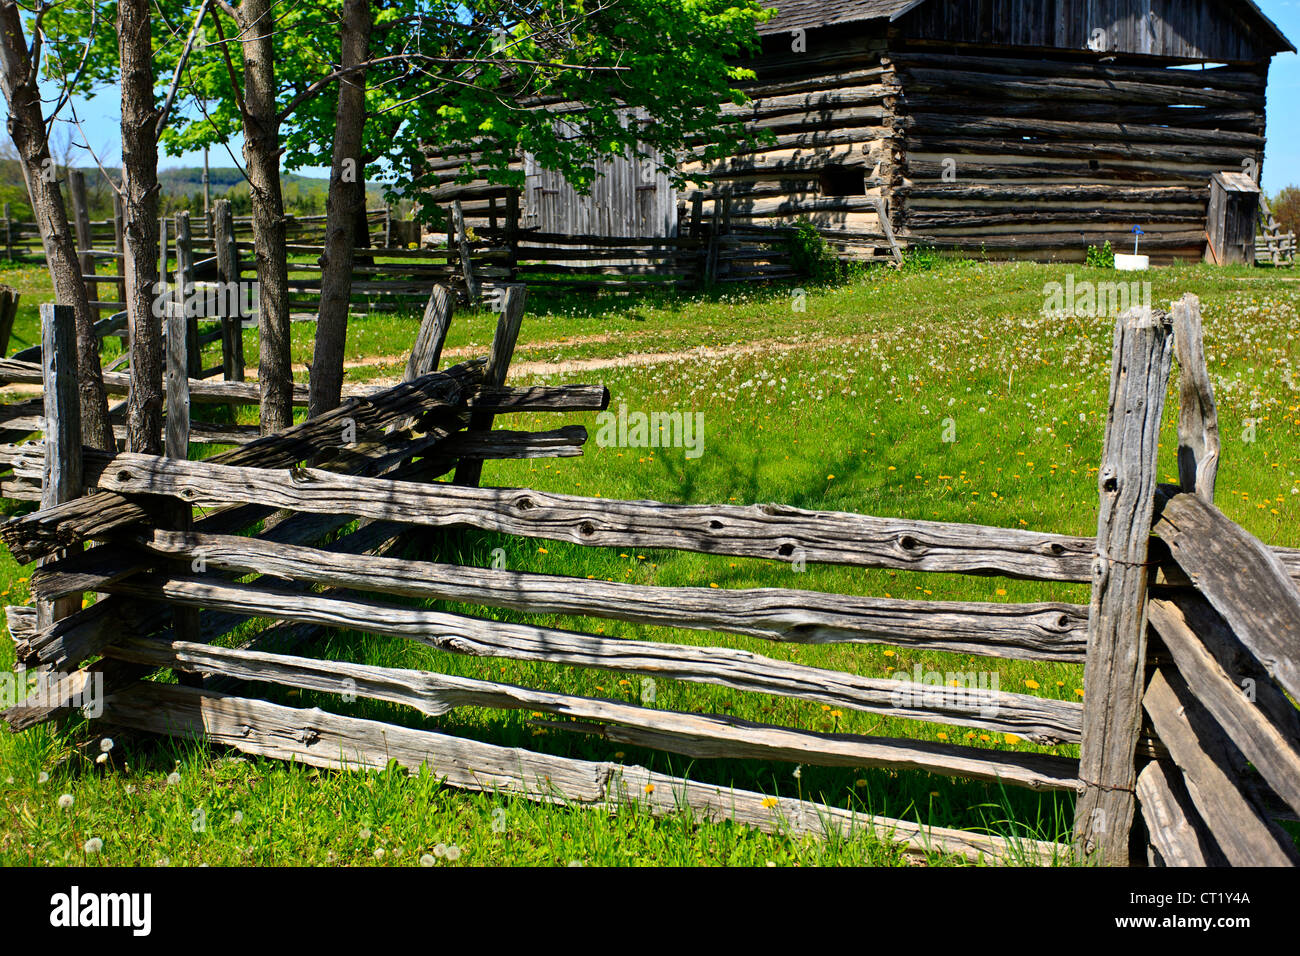 Split cedar rail farm fence with barns Stock Photo